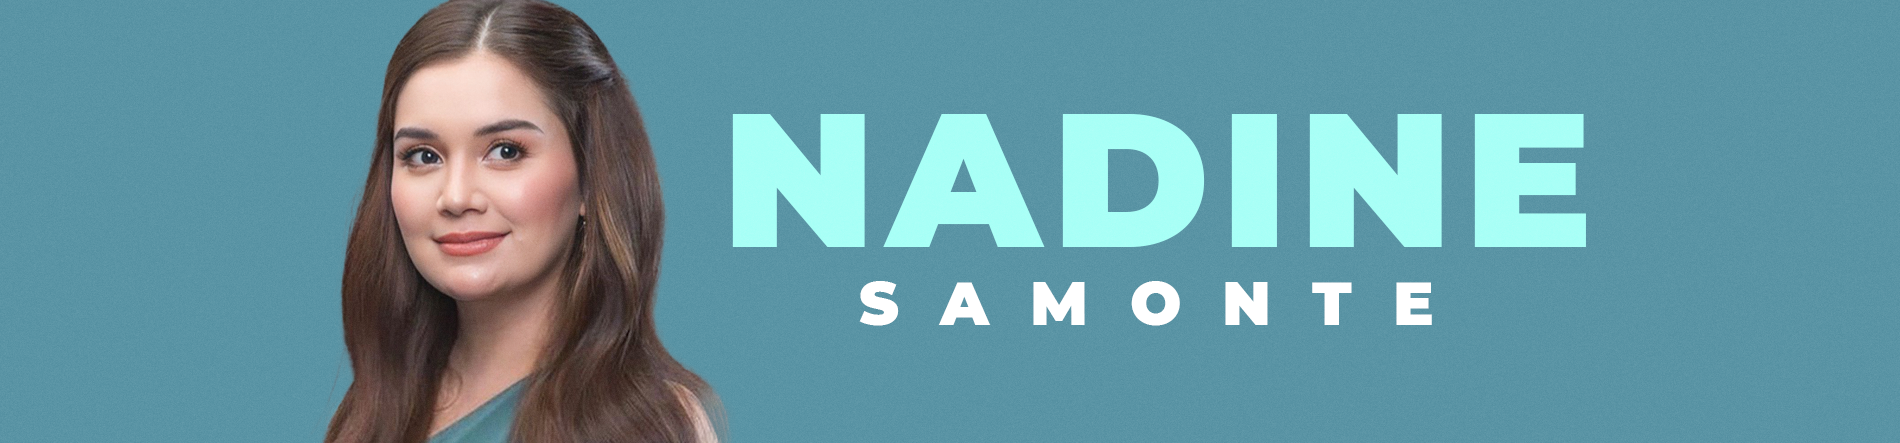 Nadine Samonte Desktop Banner